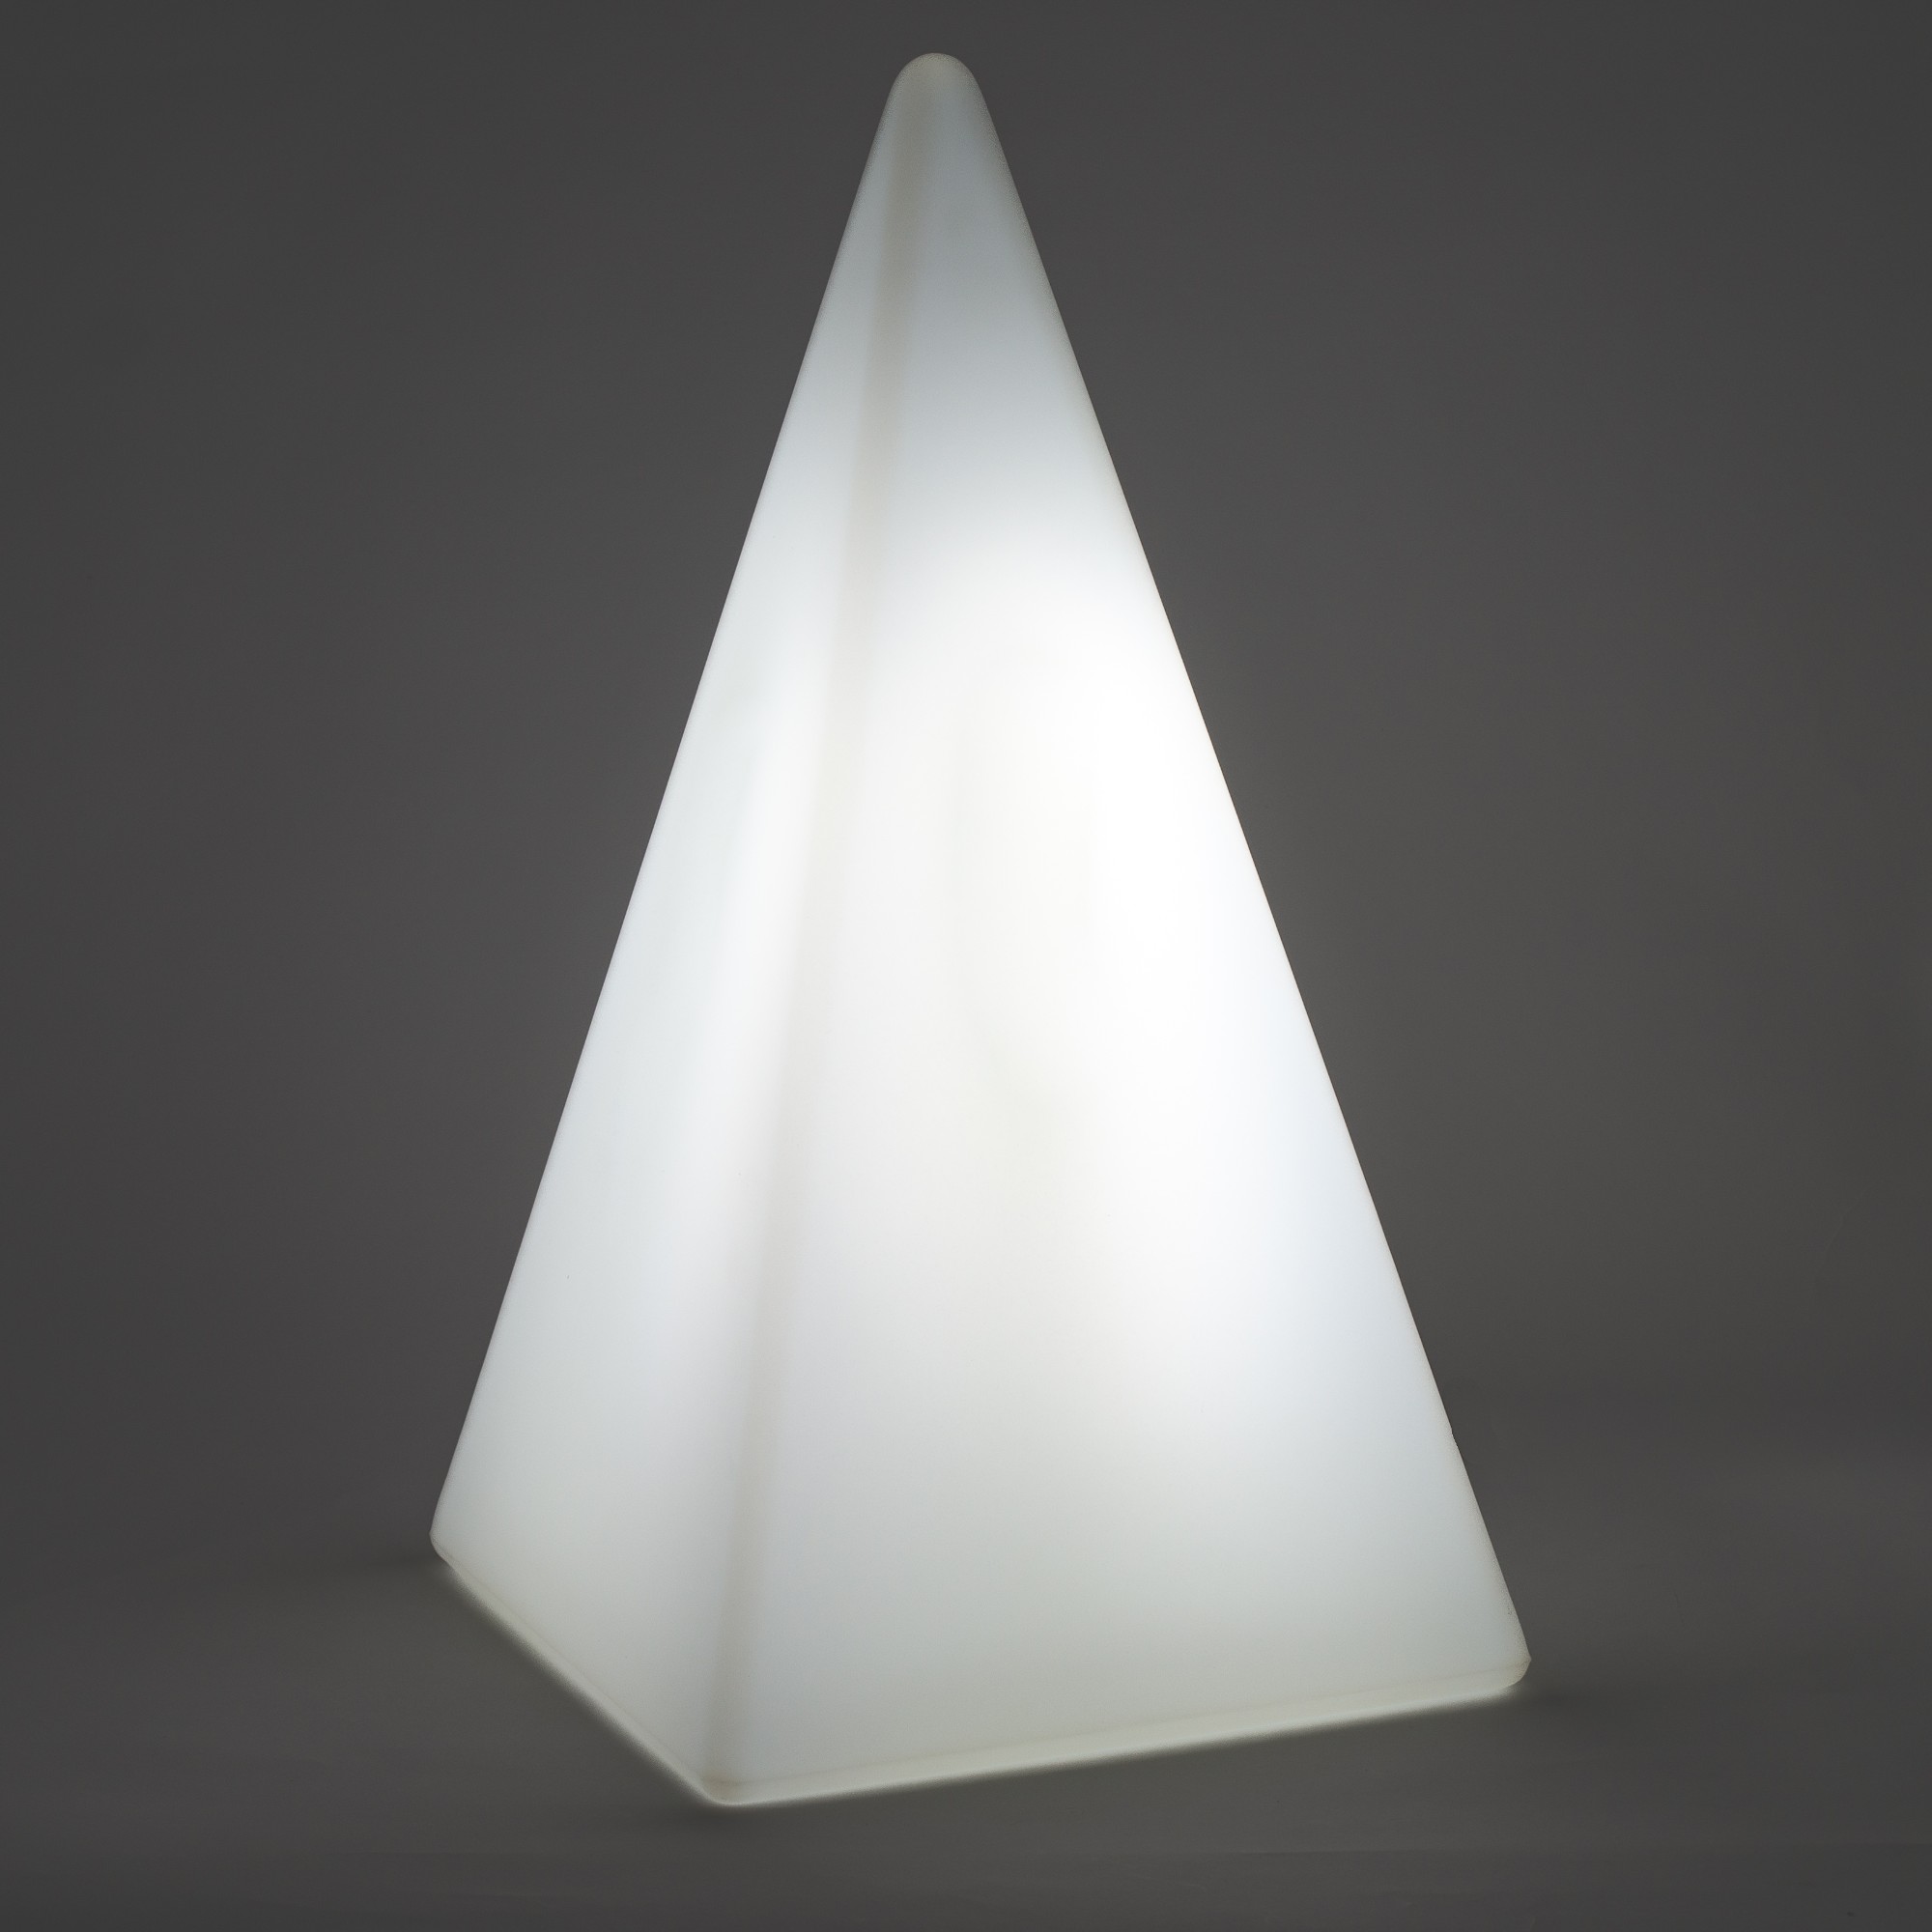 70674 Standleuchte Pyramide 54 cm der Firma EPSTEIN Design Leuchten